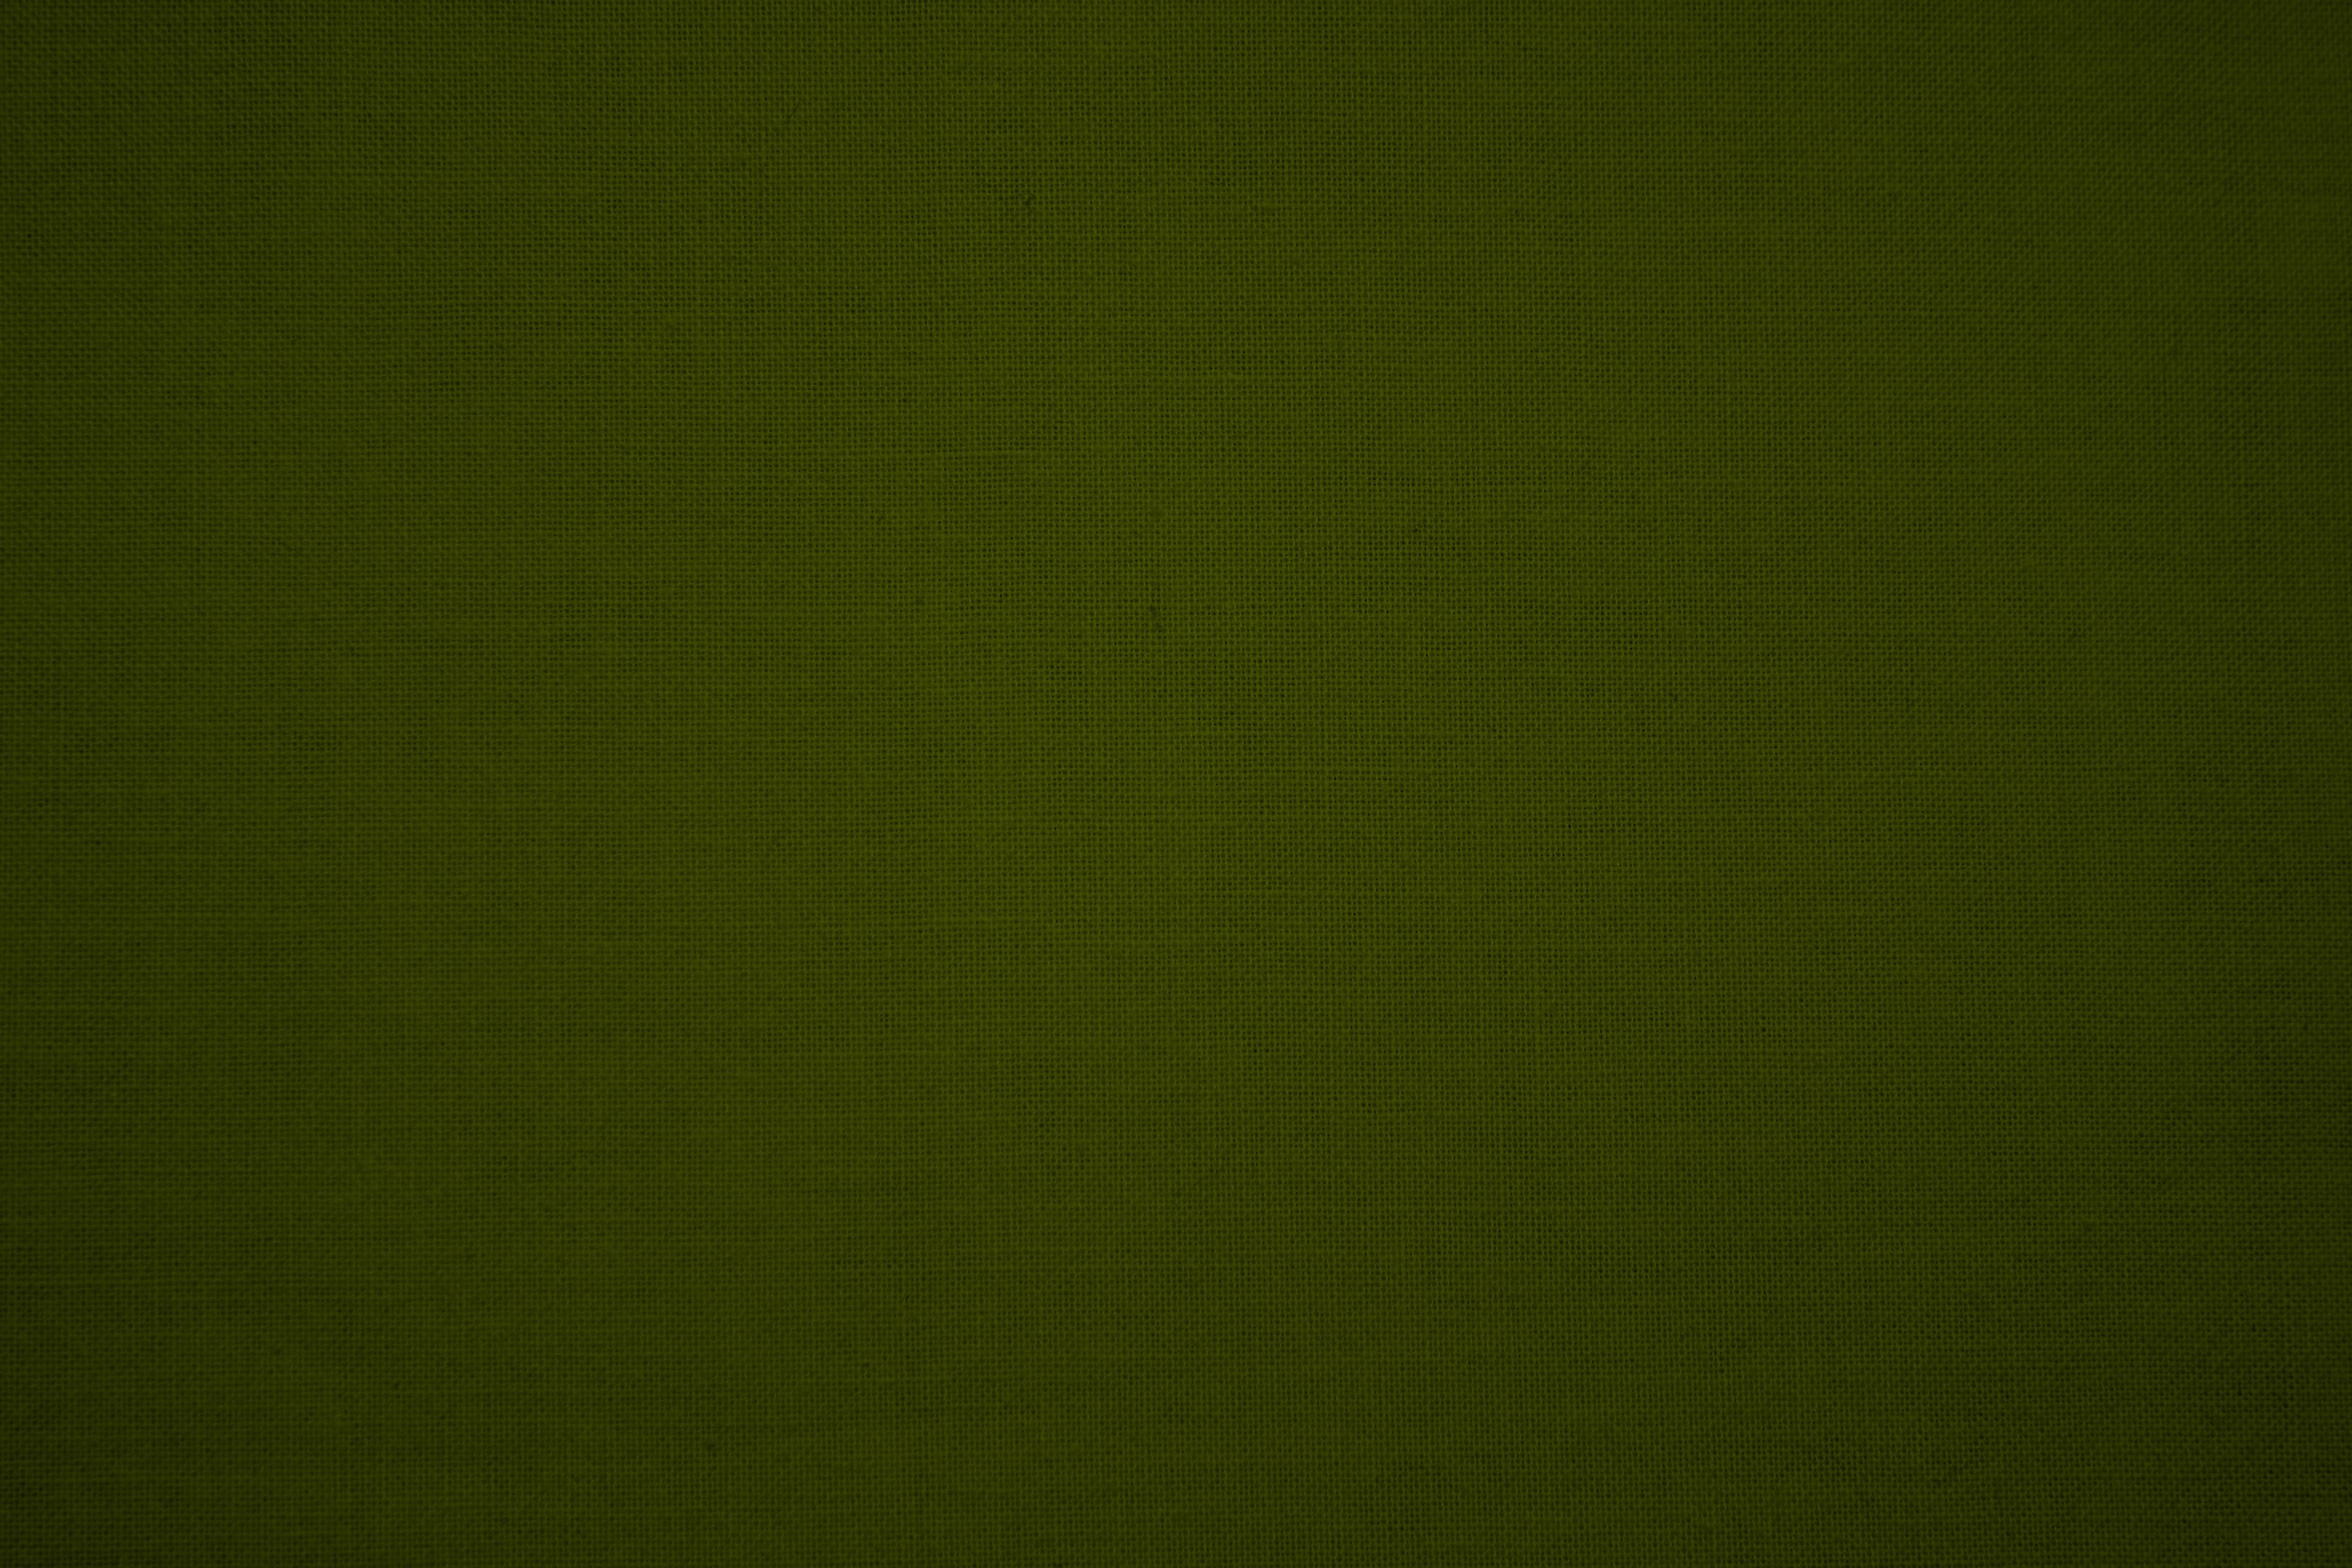 42+] Olive Green Desktop Wallpaper - WallpaperSafari